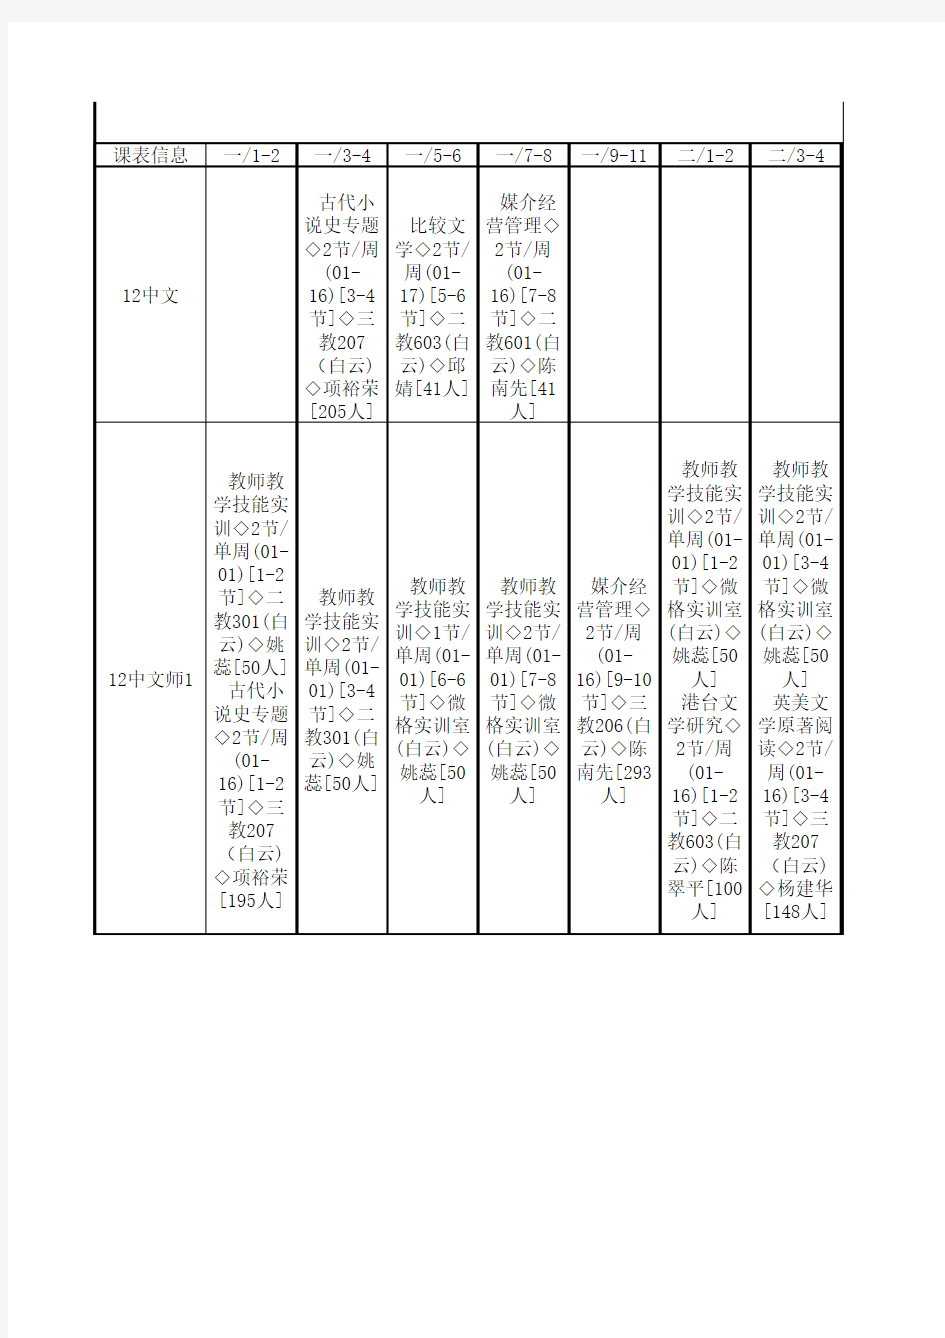 广东技术师范学院14-15第二学期课程表初稿文学院